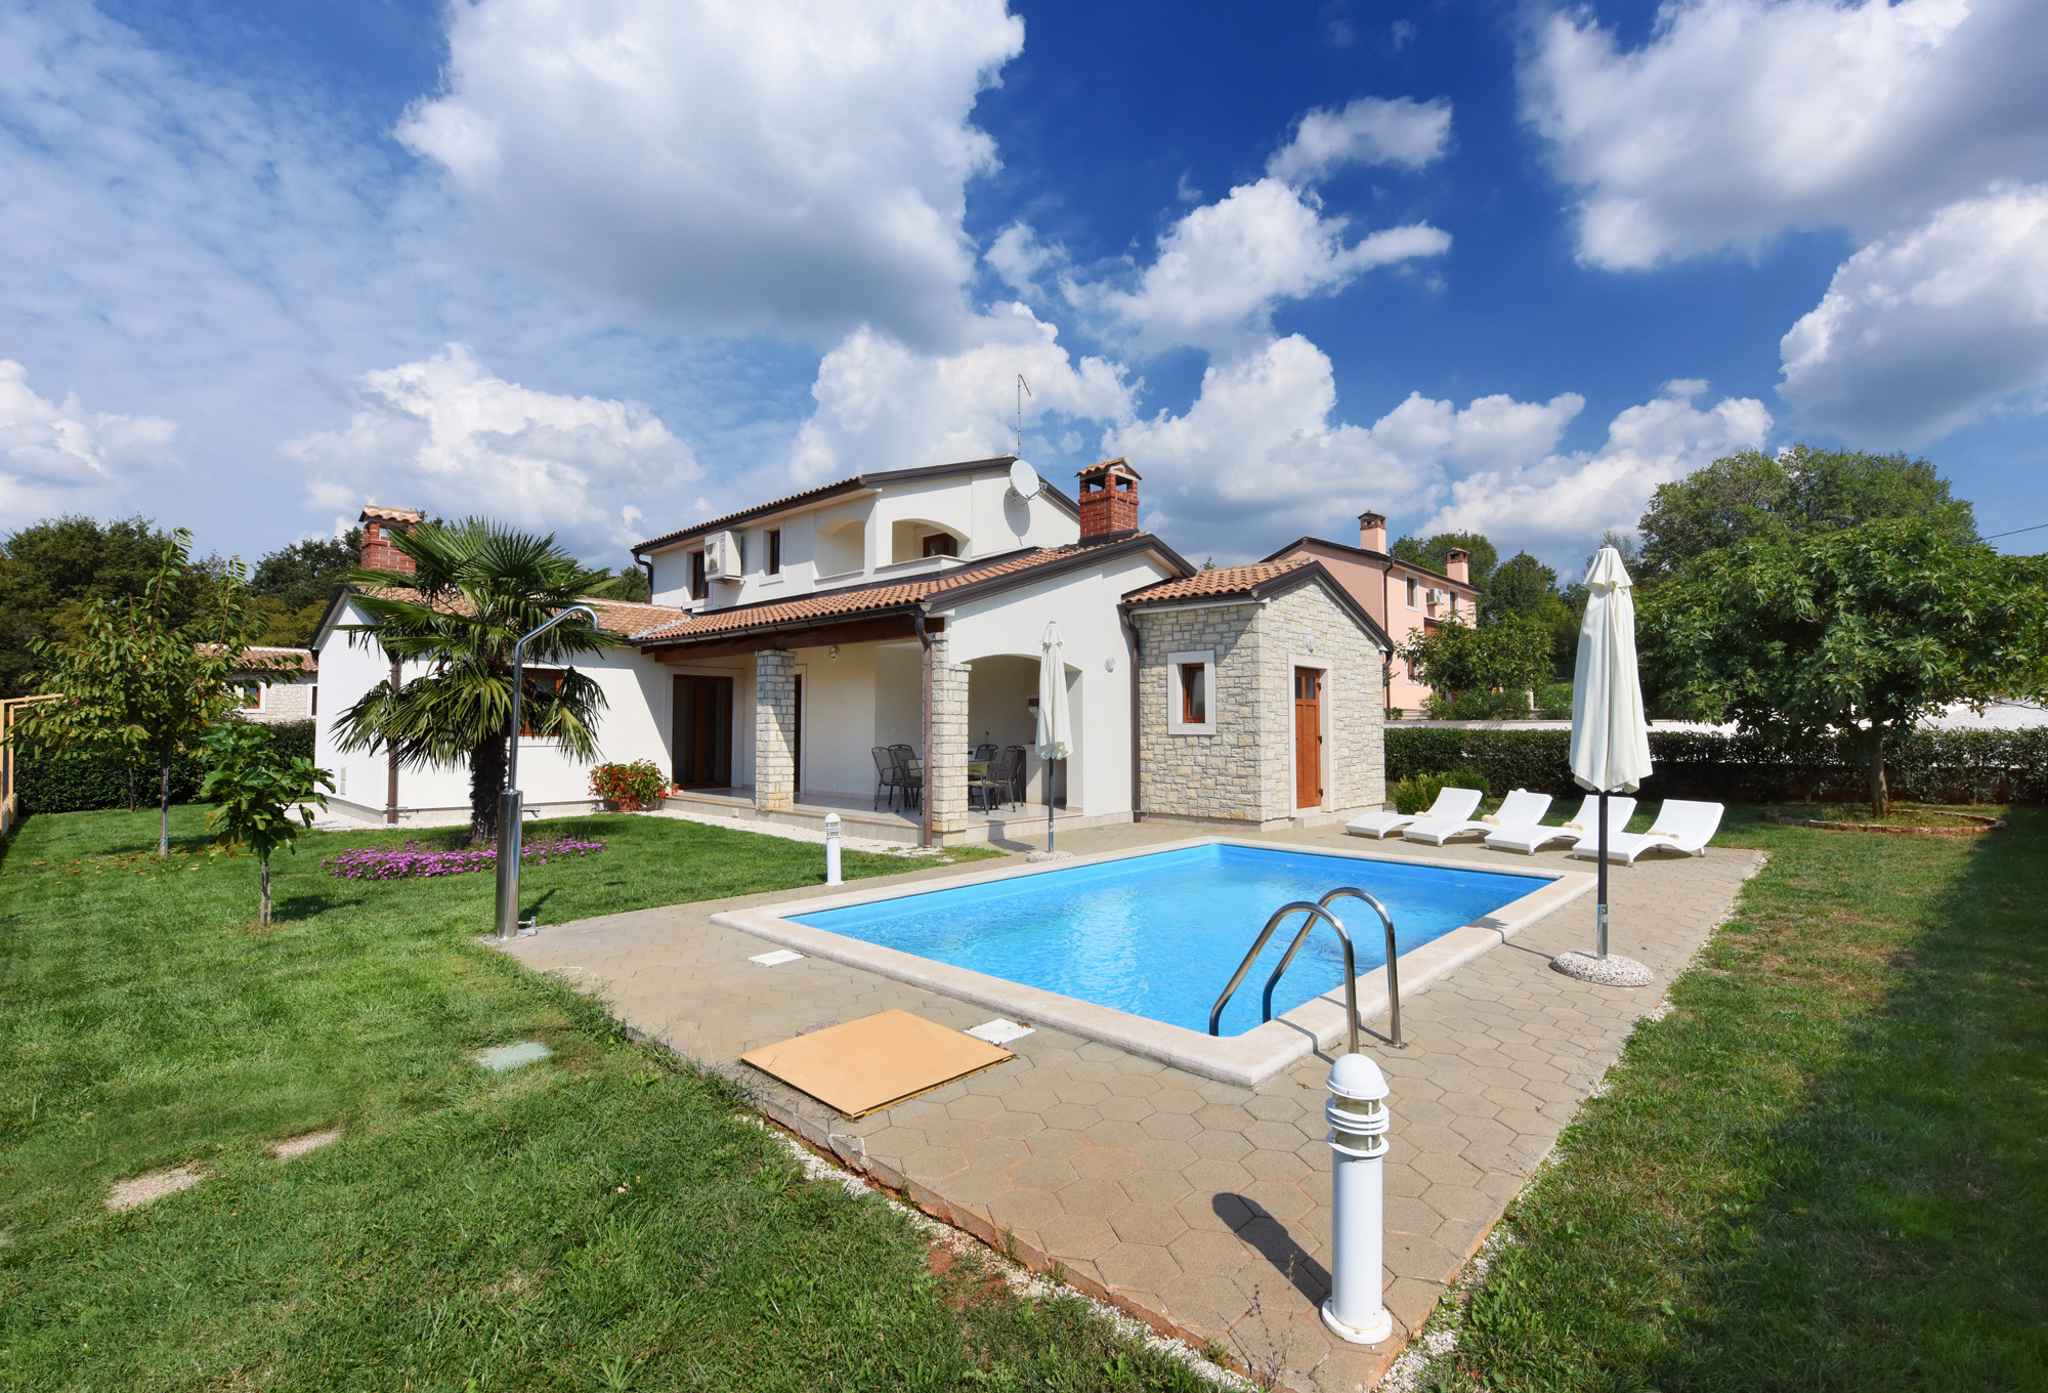 Villa mit Swimmingpool und Grillplatz Ferienhaus in Kroatien